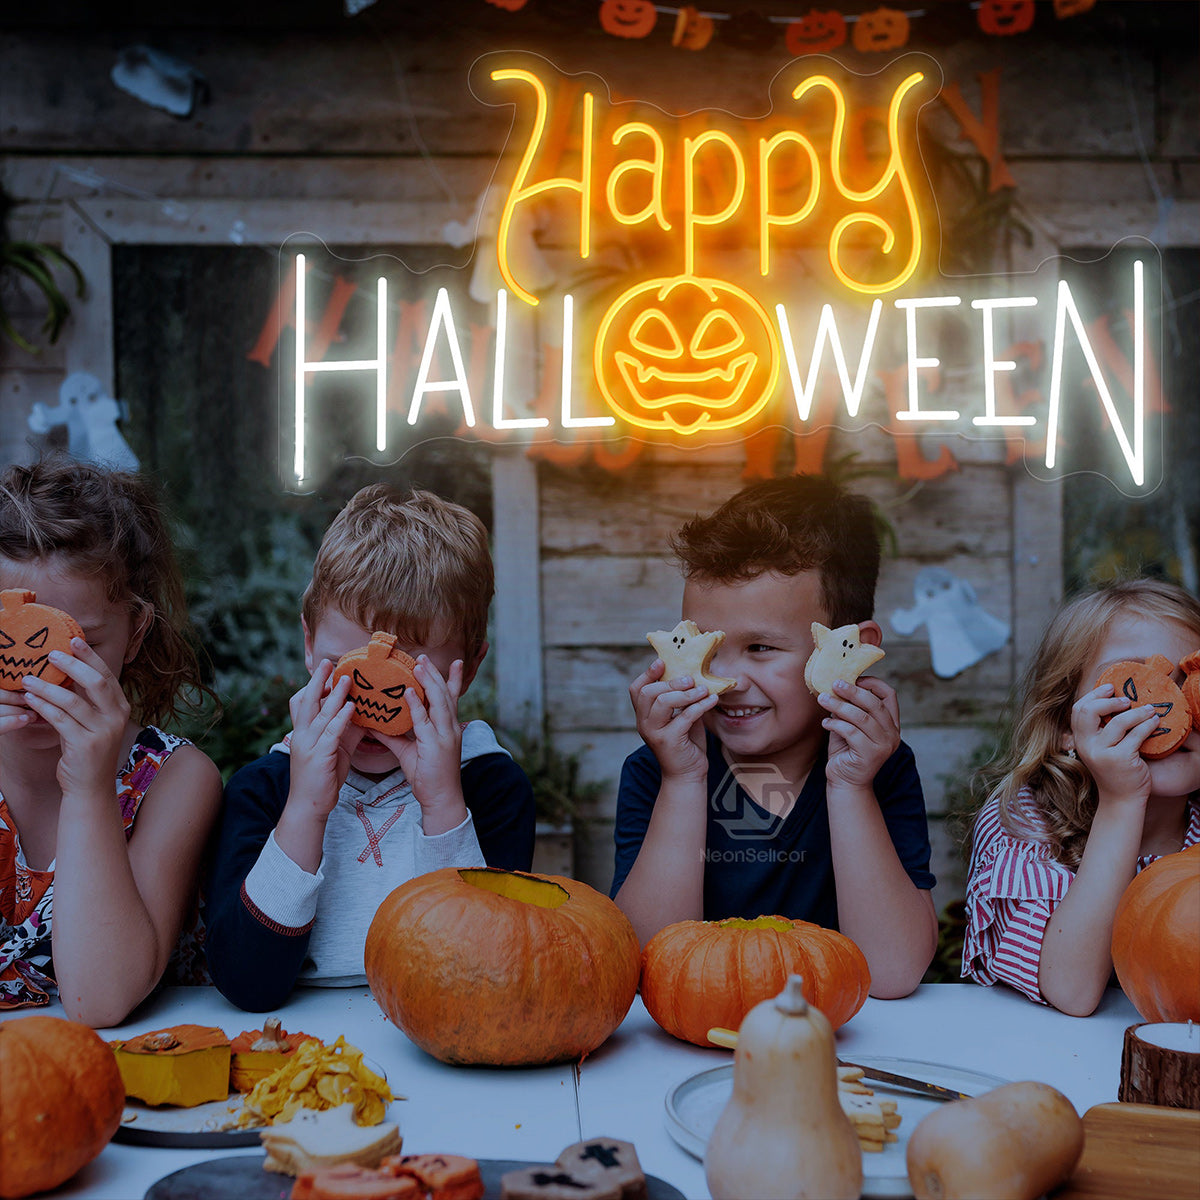 NEONIP-100% Handmade Happy Halloween Neon Sign, Pumpkin Decor